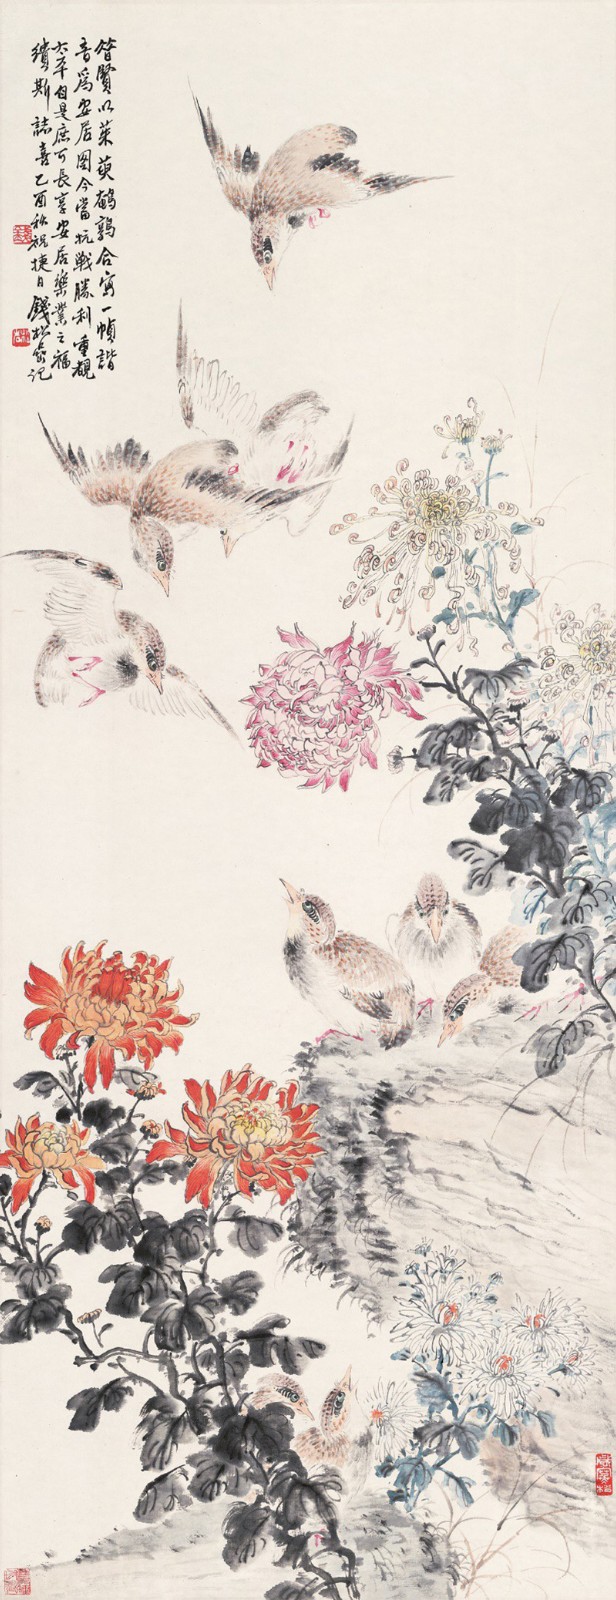 钱松喦,茱萸鹌鹑图(安居图),122×47cm,纸本水墨,1945